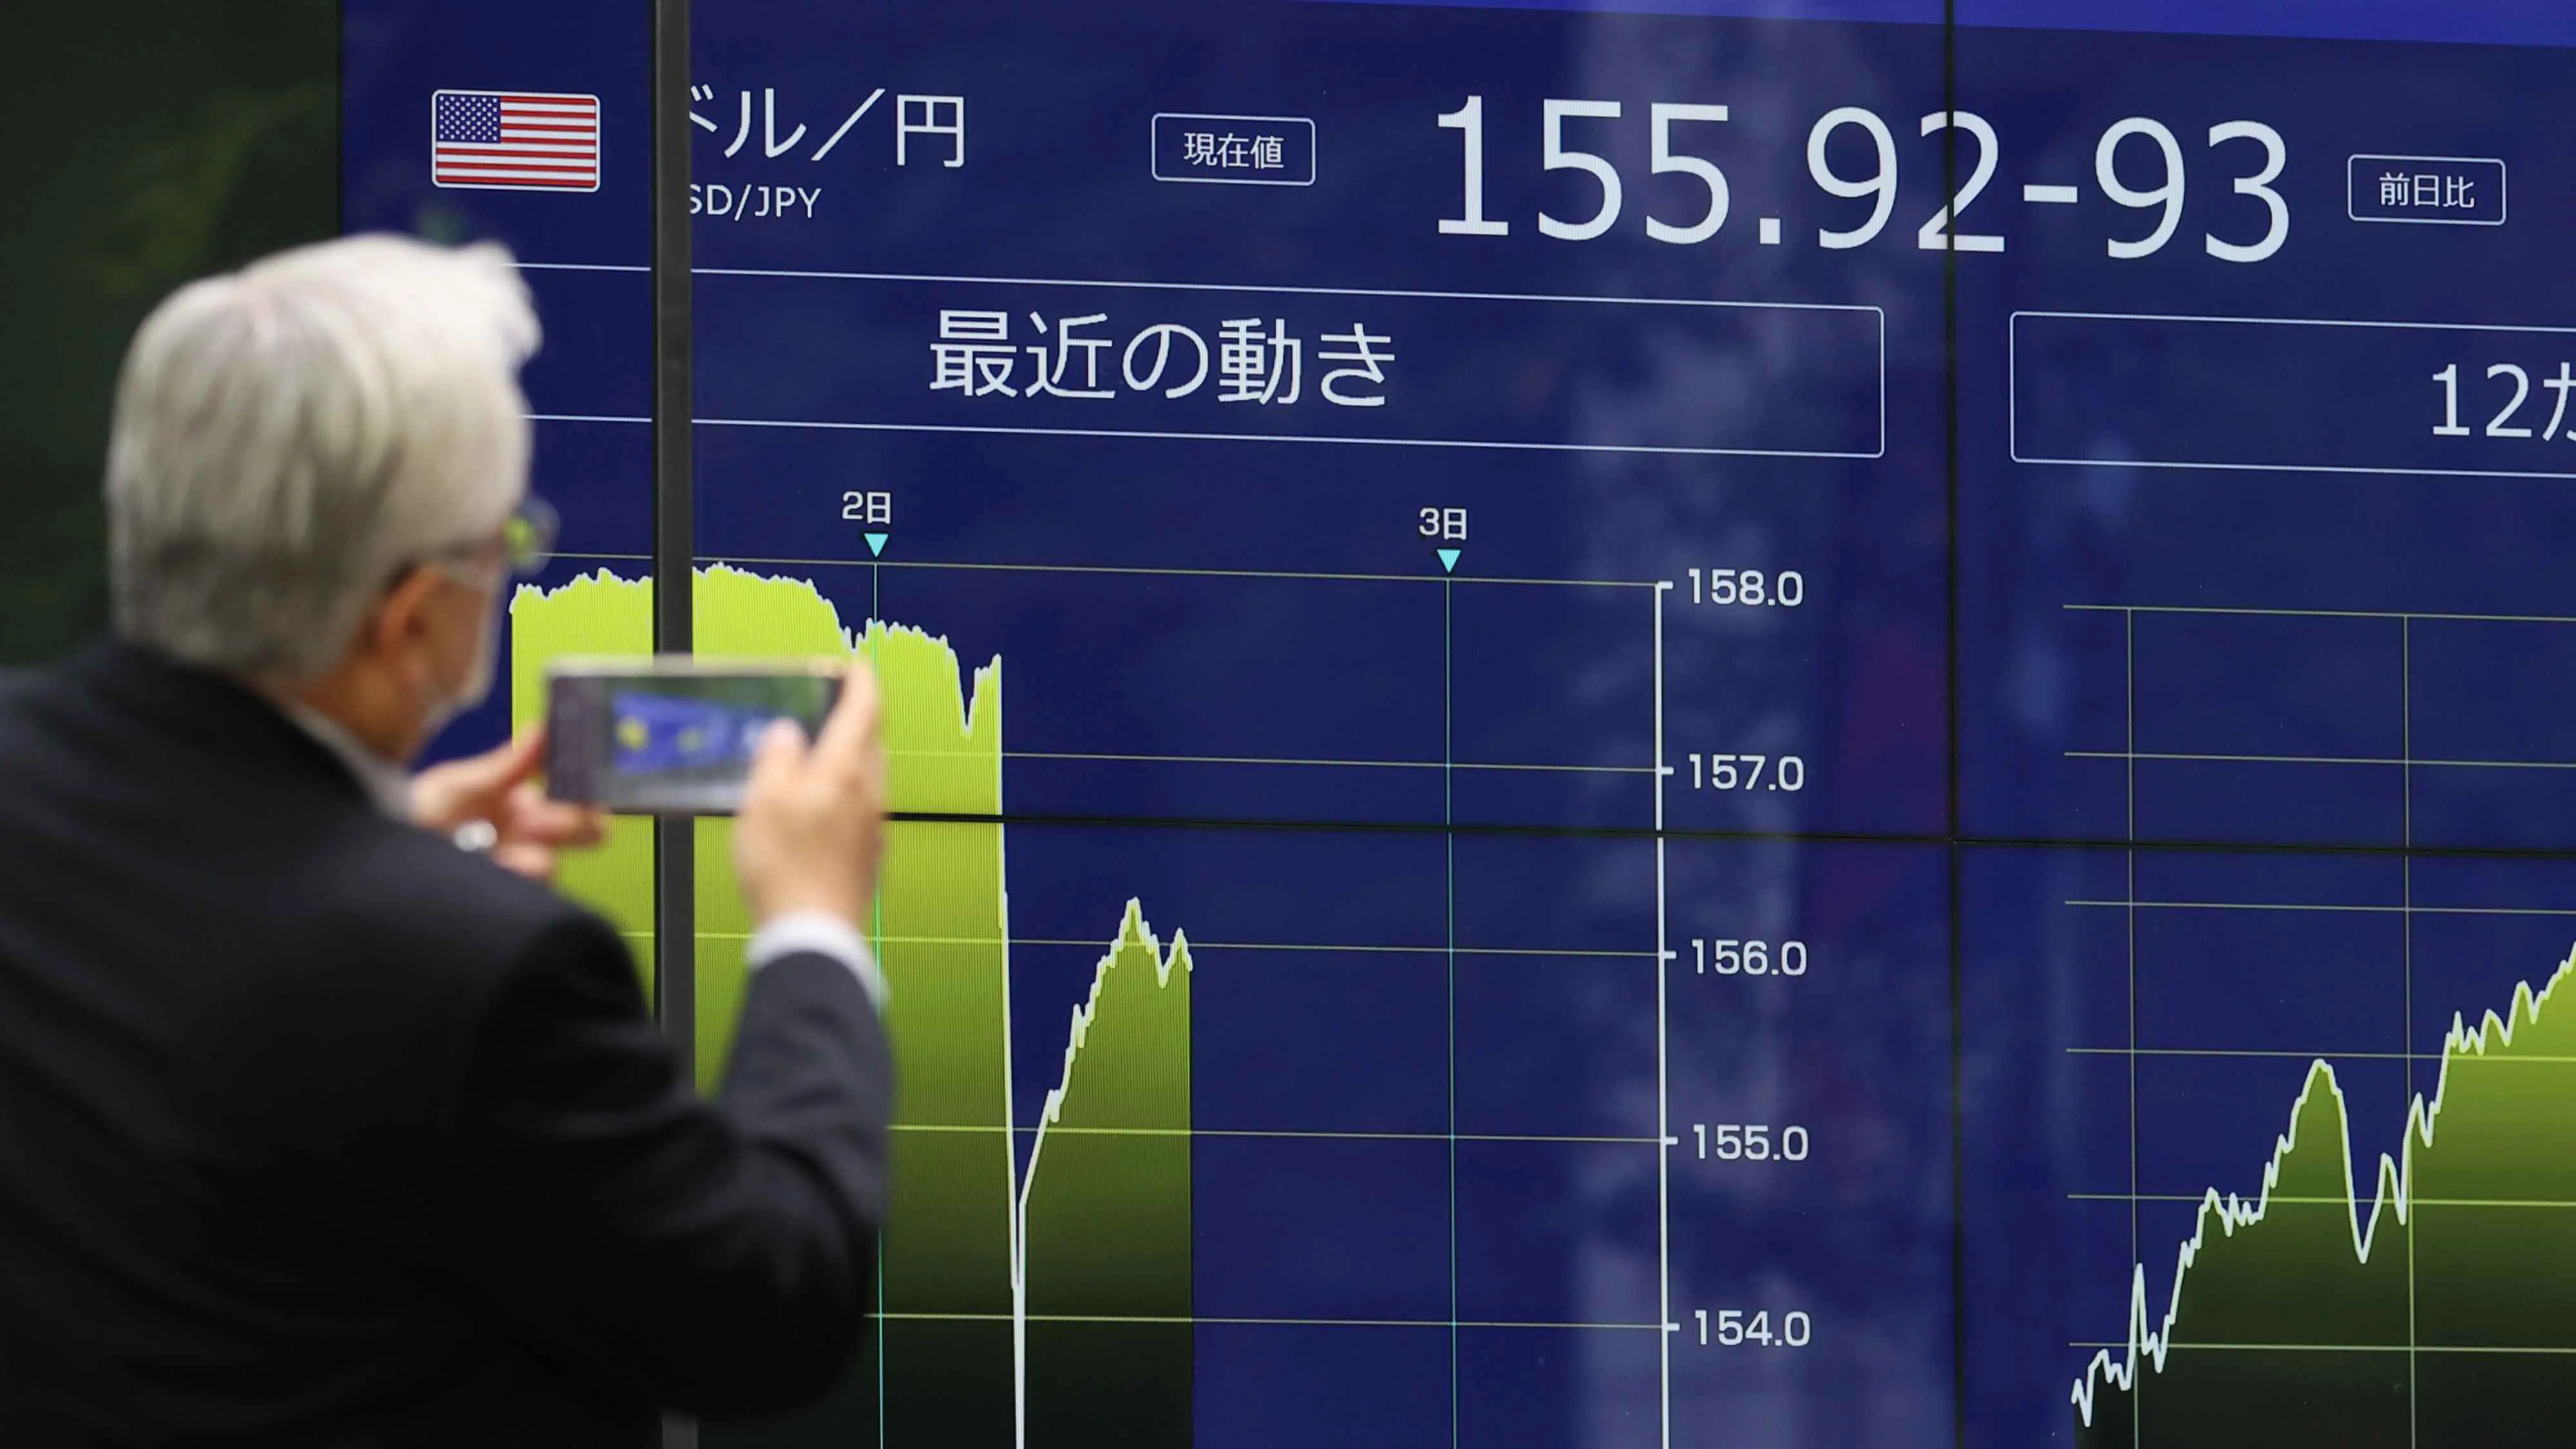 مؤشر الأسهم  الرئيسي في اليابان يتجاوز 42 ألف نقطة إلى مستوى غير مسبوق